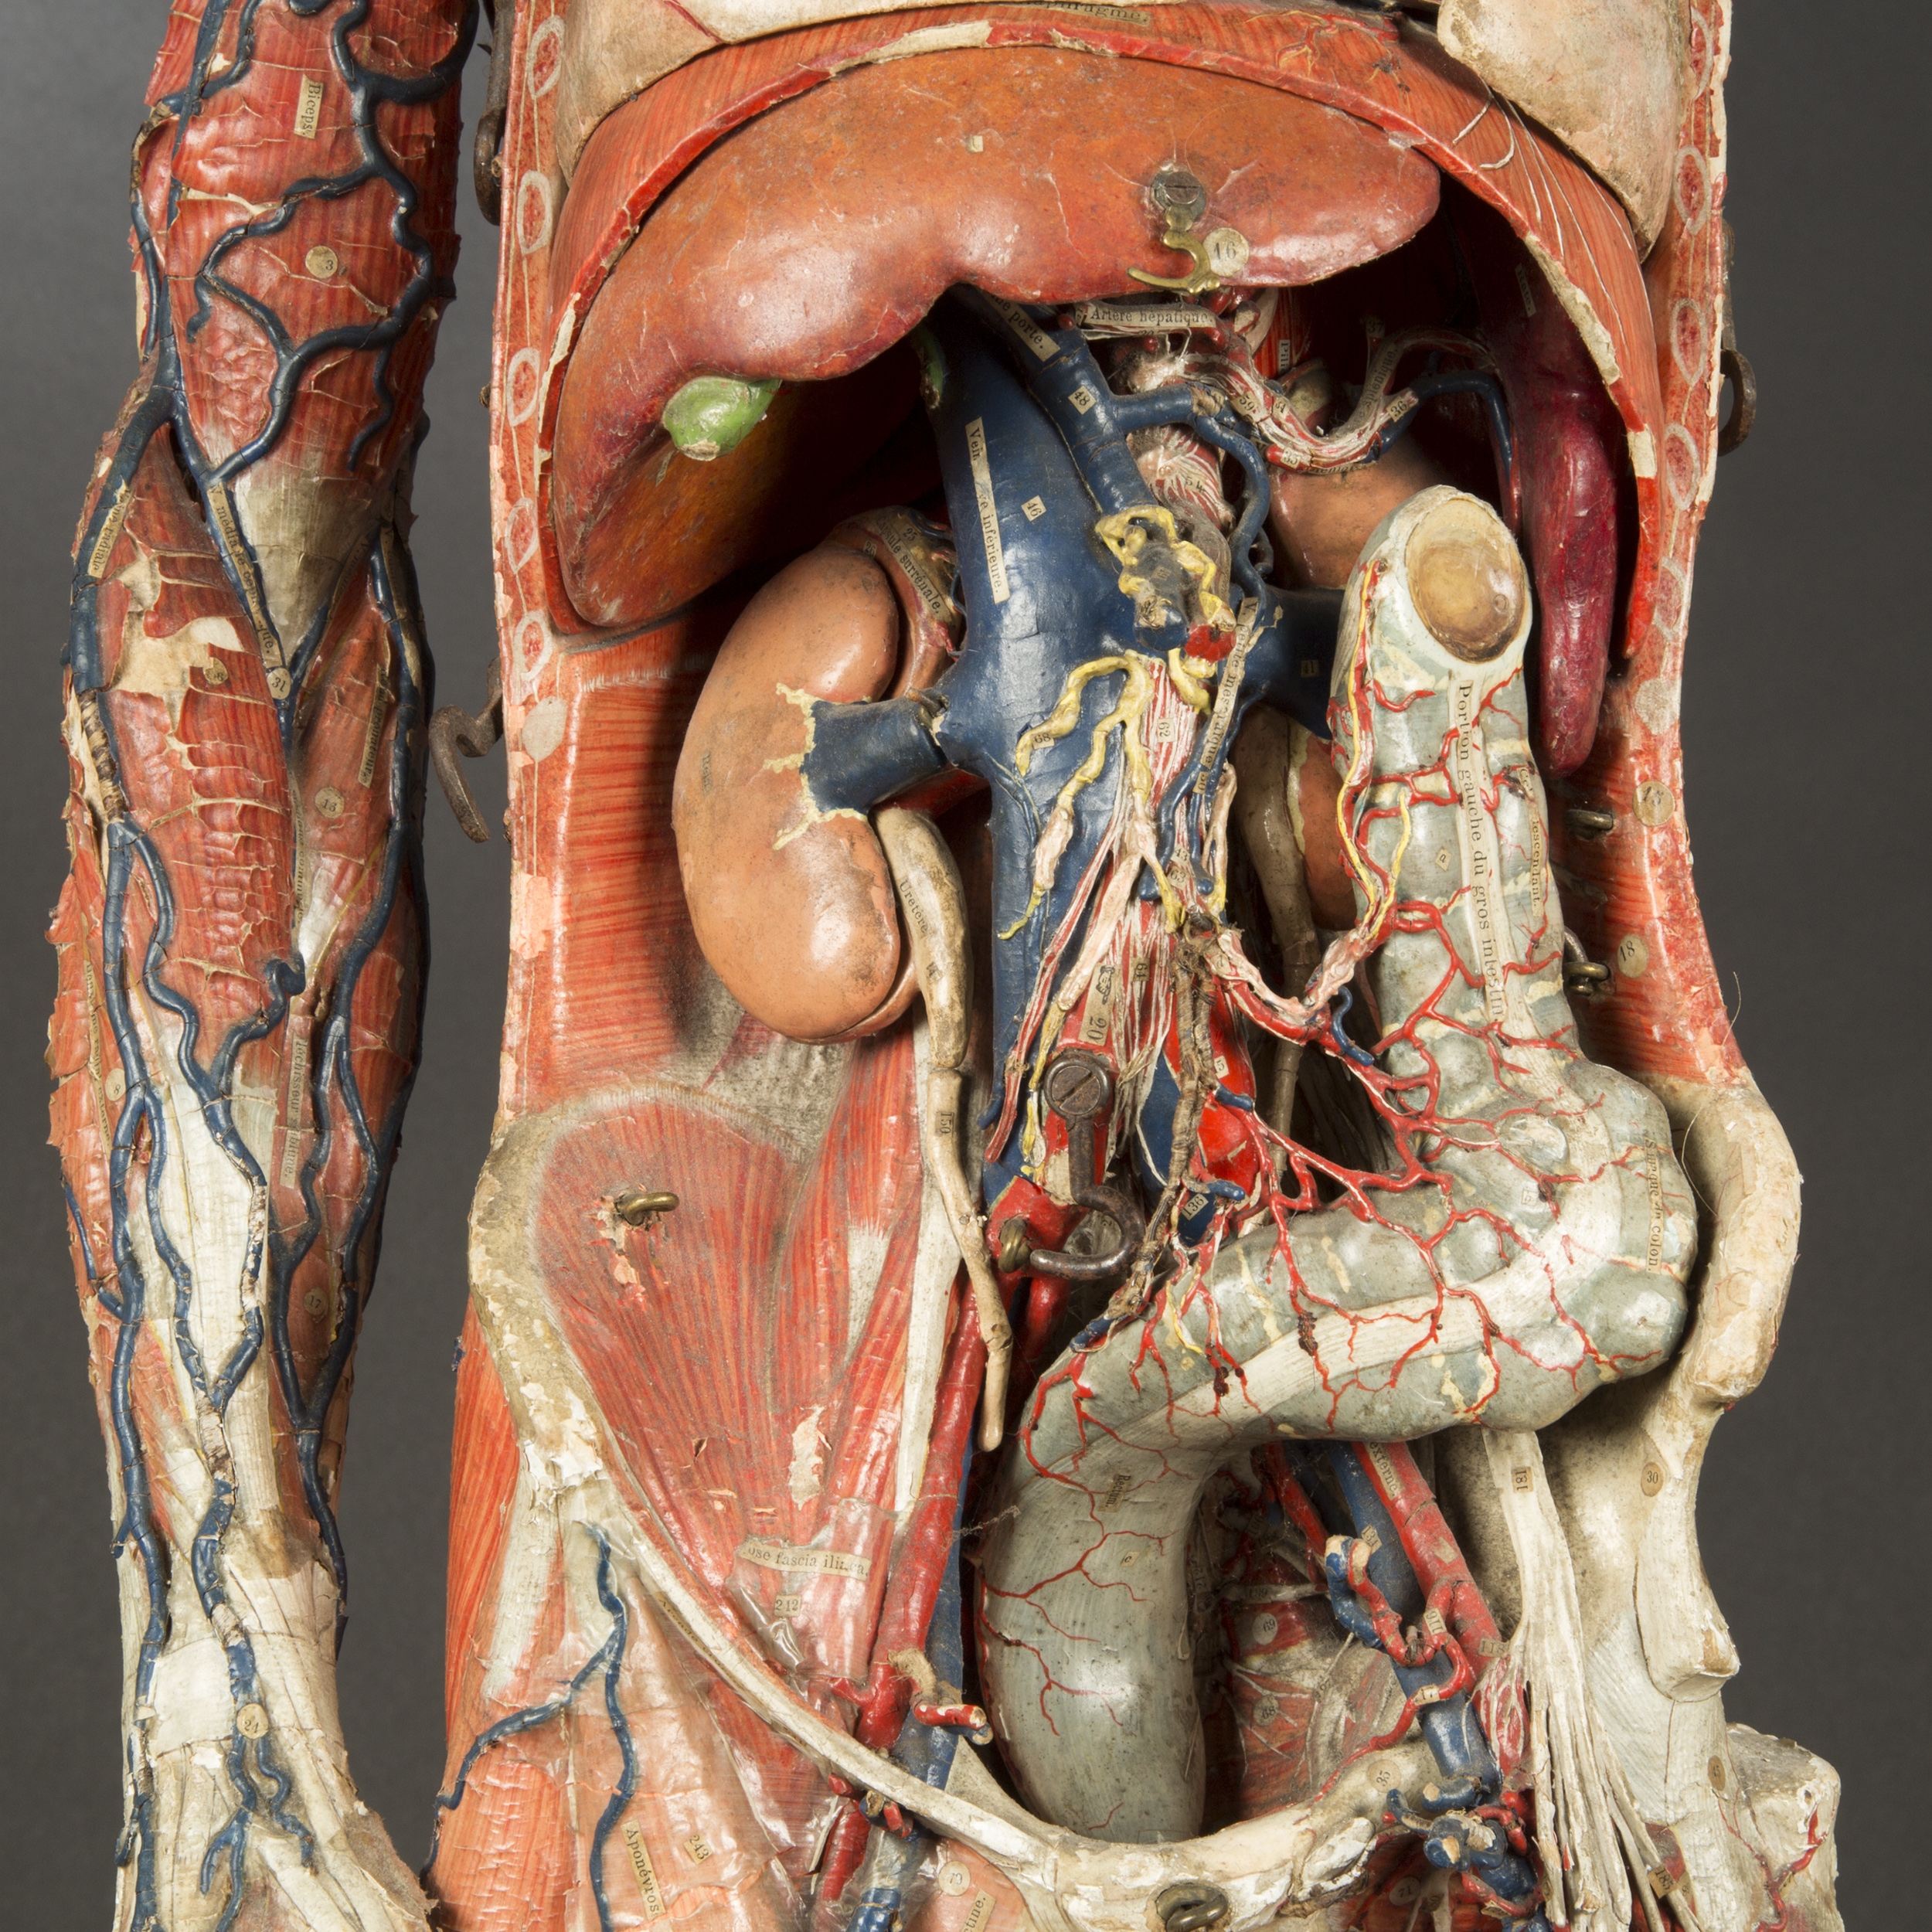 modele-anatomique-docteur-Auzoux-1820-12 – La boite verte